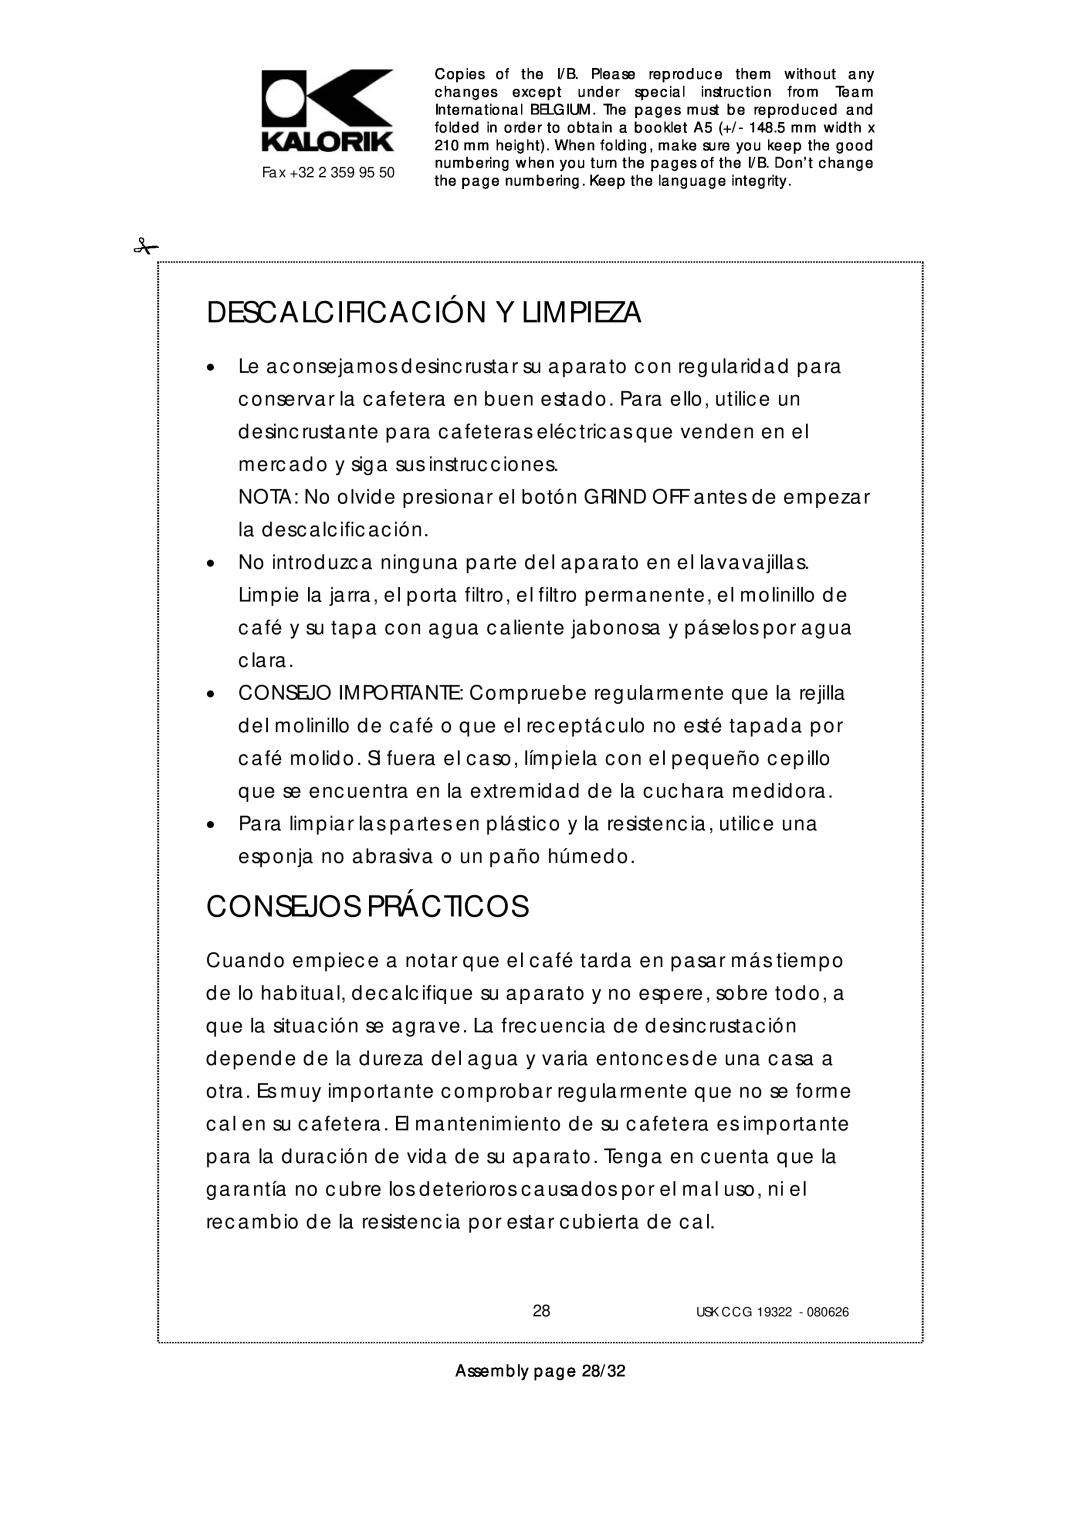 Kalorik USK CCG080626, USK CCG 19322 manual Descalcificación Y Limpieza, Consejos Prácticos, Assembly page 28/32 